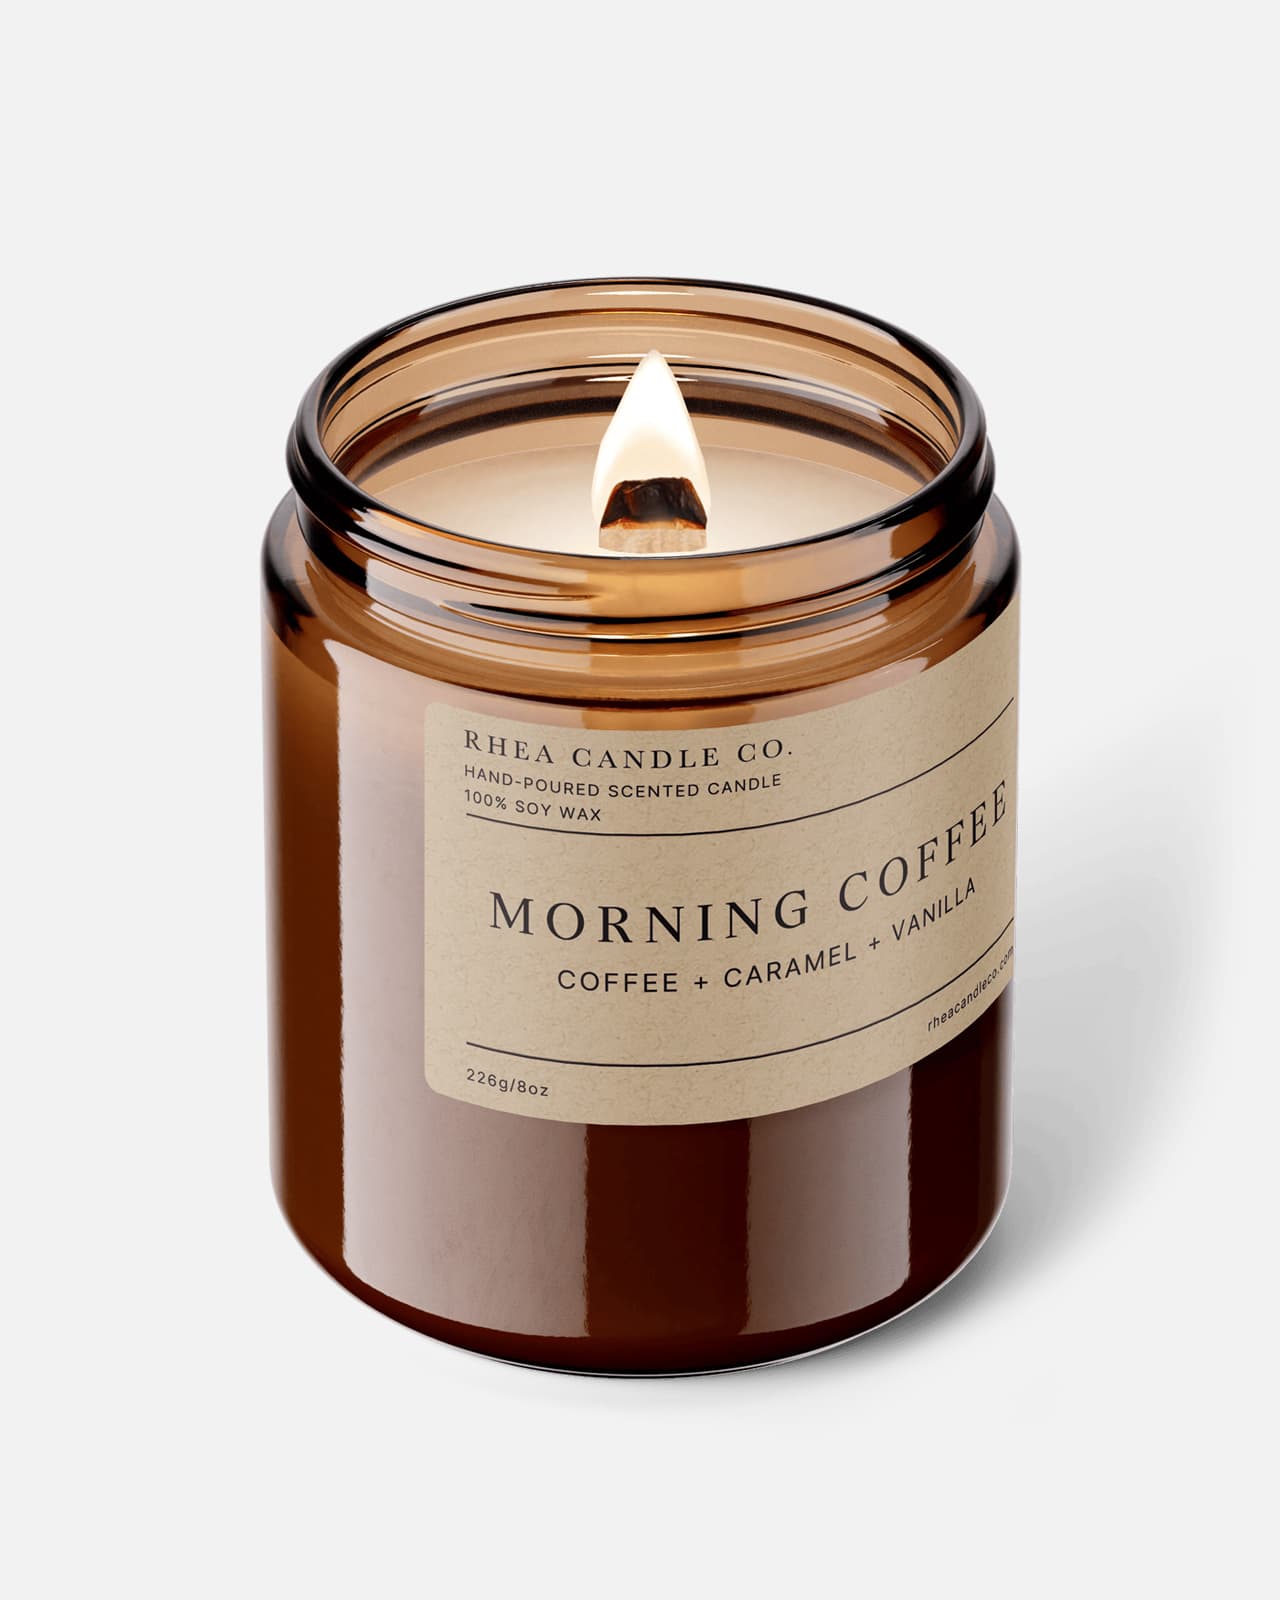 Morning Coffee Candle | Coffee + Caramel + Vanilla - Rhea Candle Co.